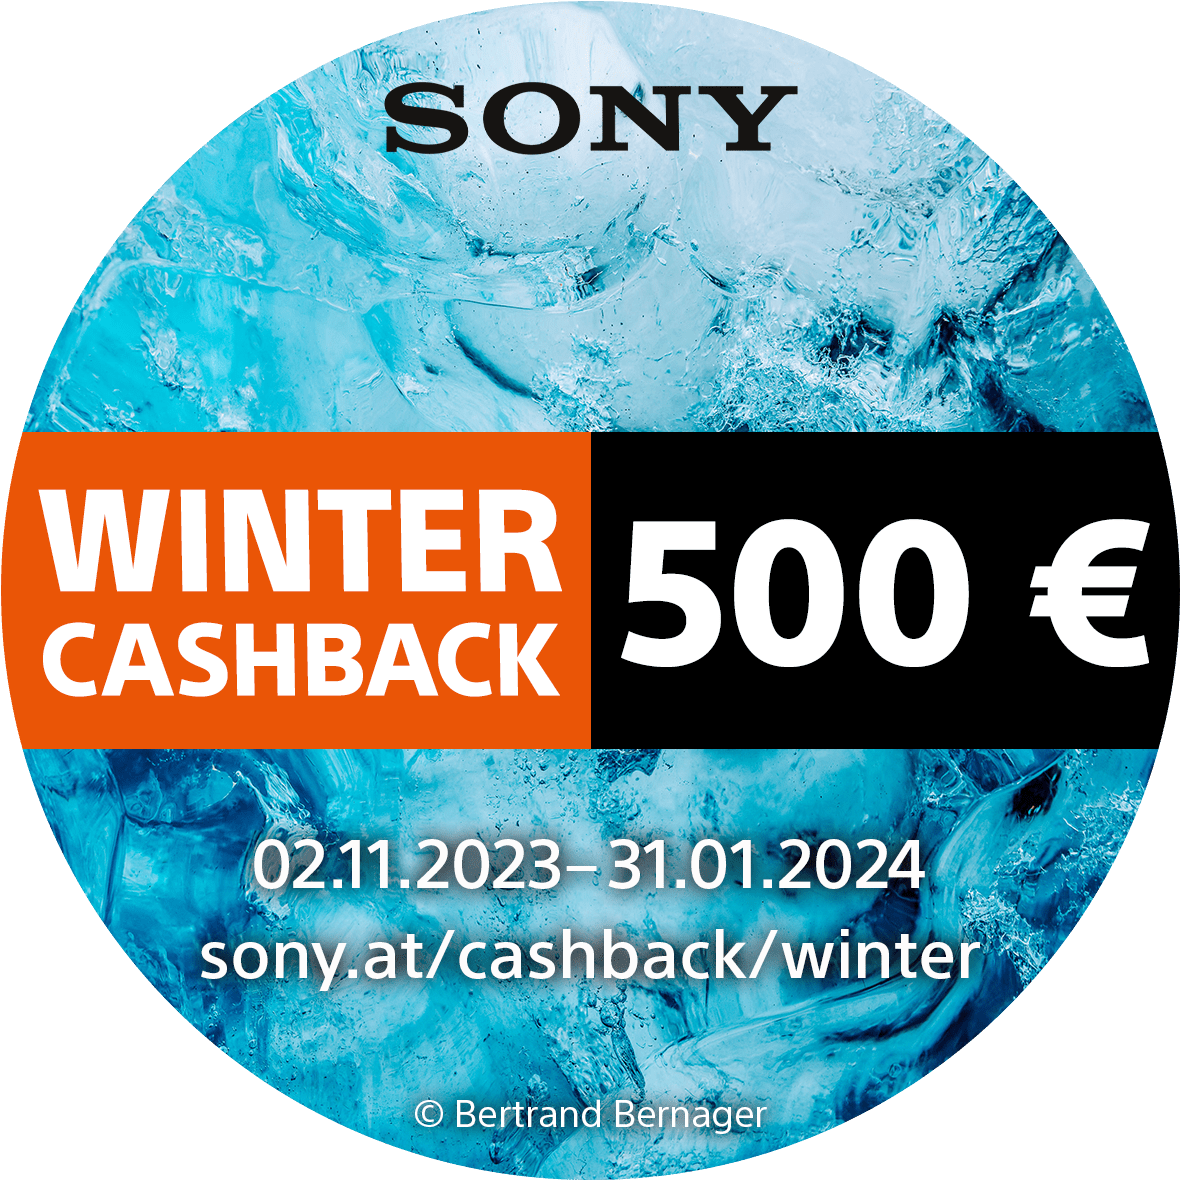 Sony_Winter_Cashback_02112023_bis_31012024_500